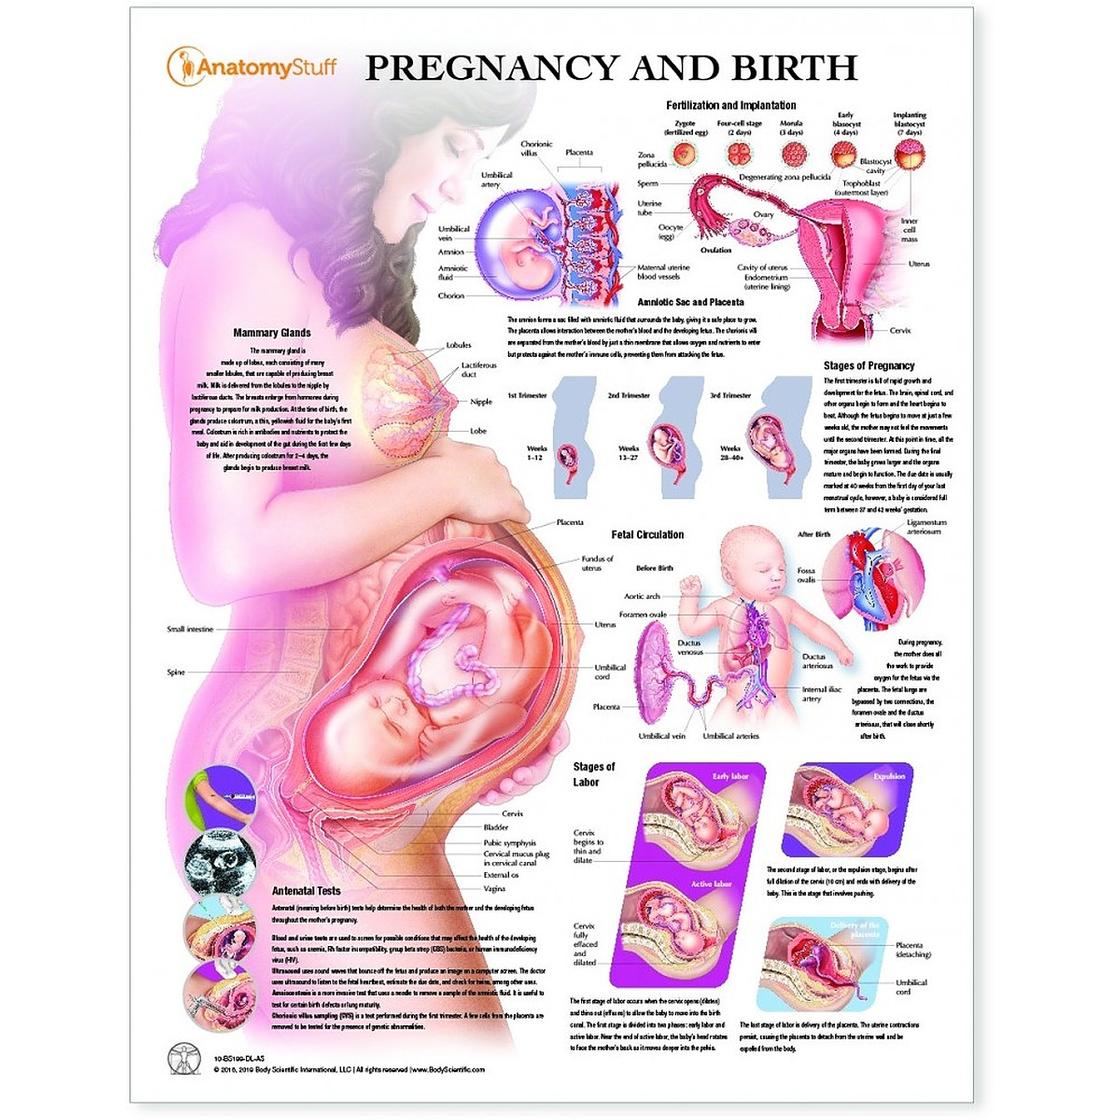 32 недели беременности какой. Положение ребенка в животе на 33 неделе беременности. Плод в животе матери схема. Положение органов на 32 неделе беременности. Эмбрион 34 недели беременности вес плода.